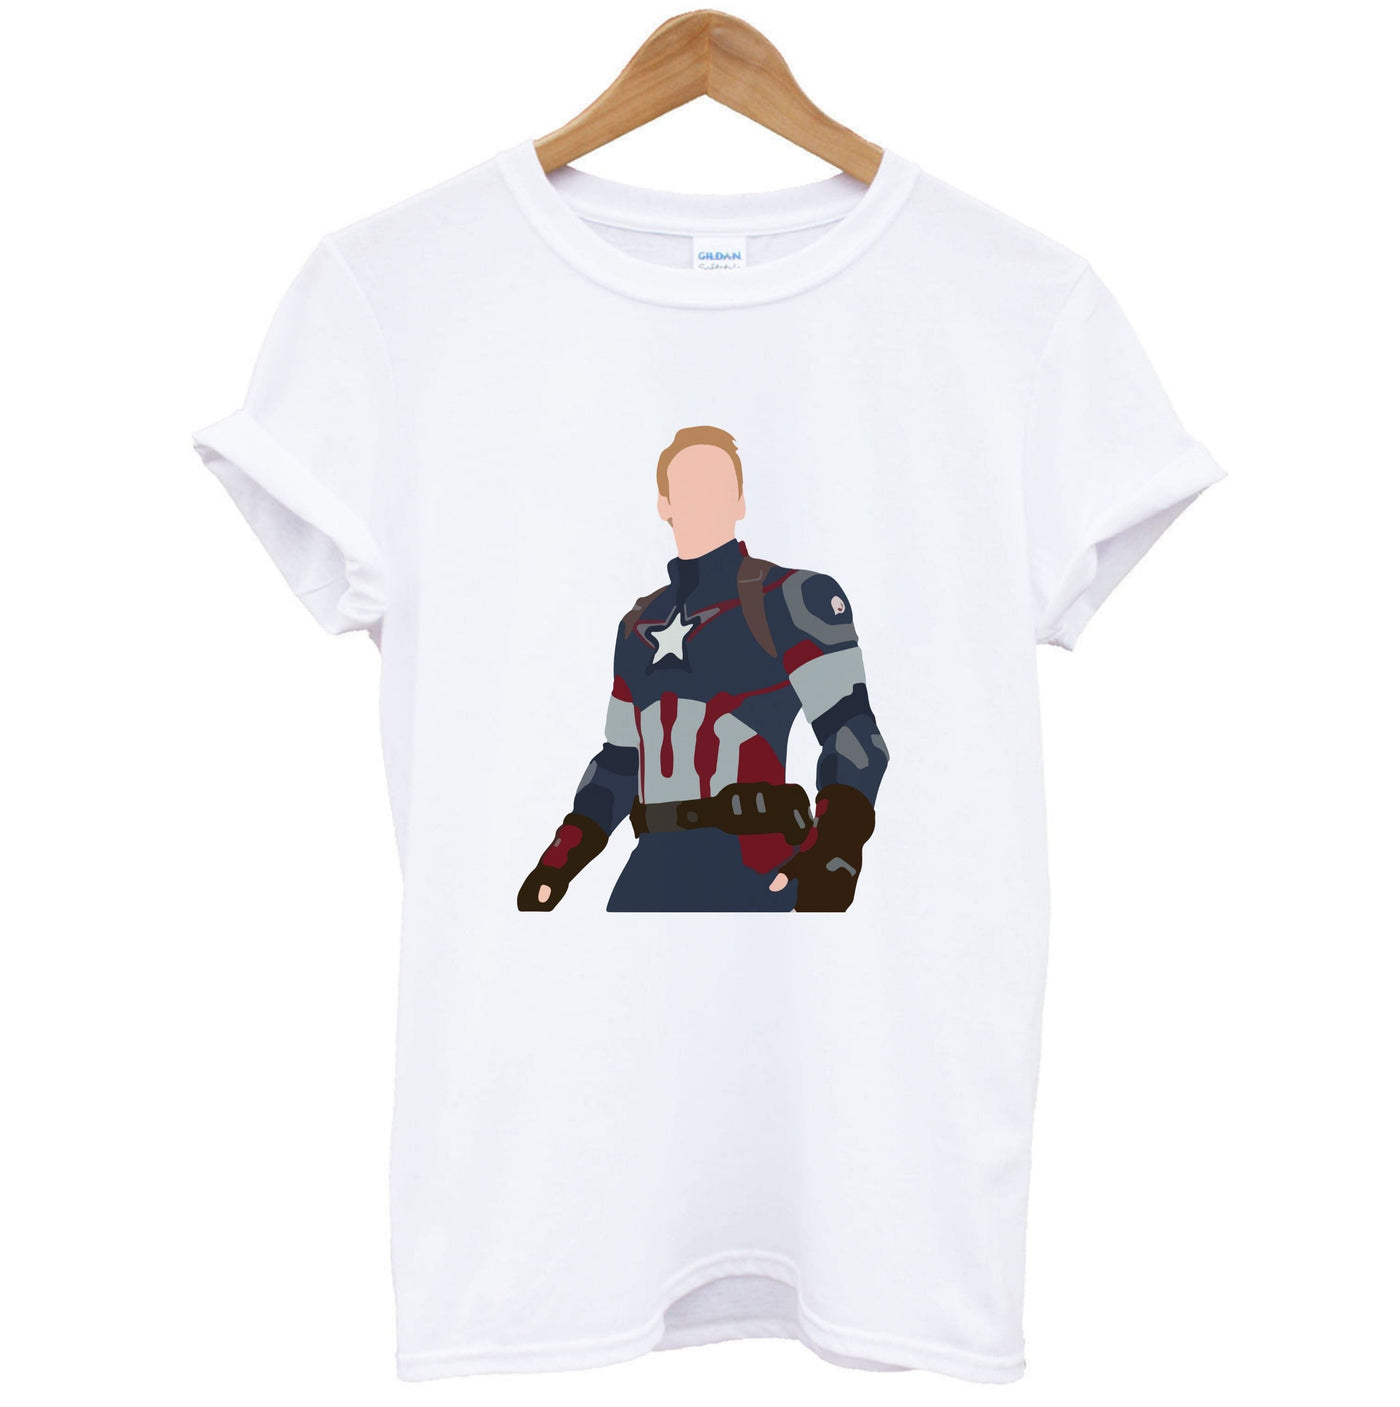 Captain America - Marvel T-Shirt